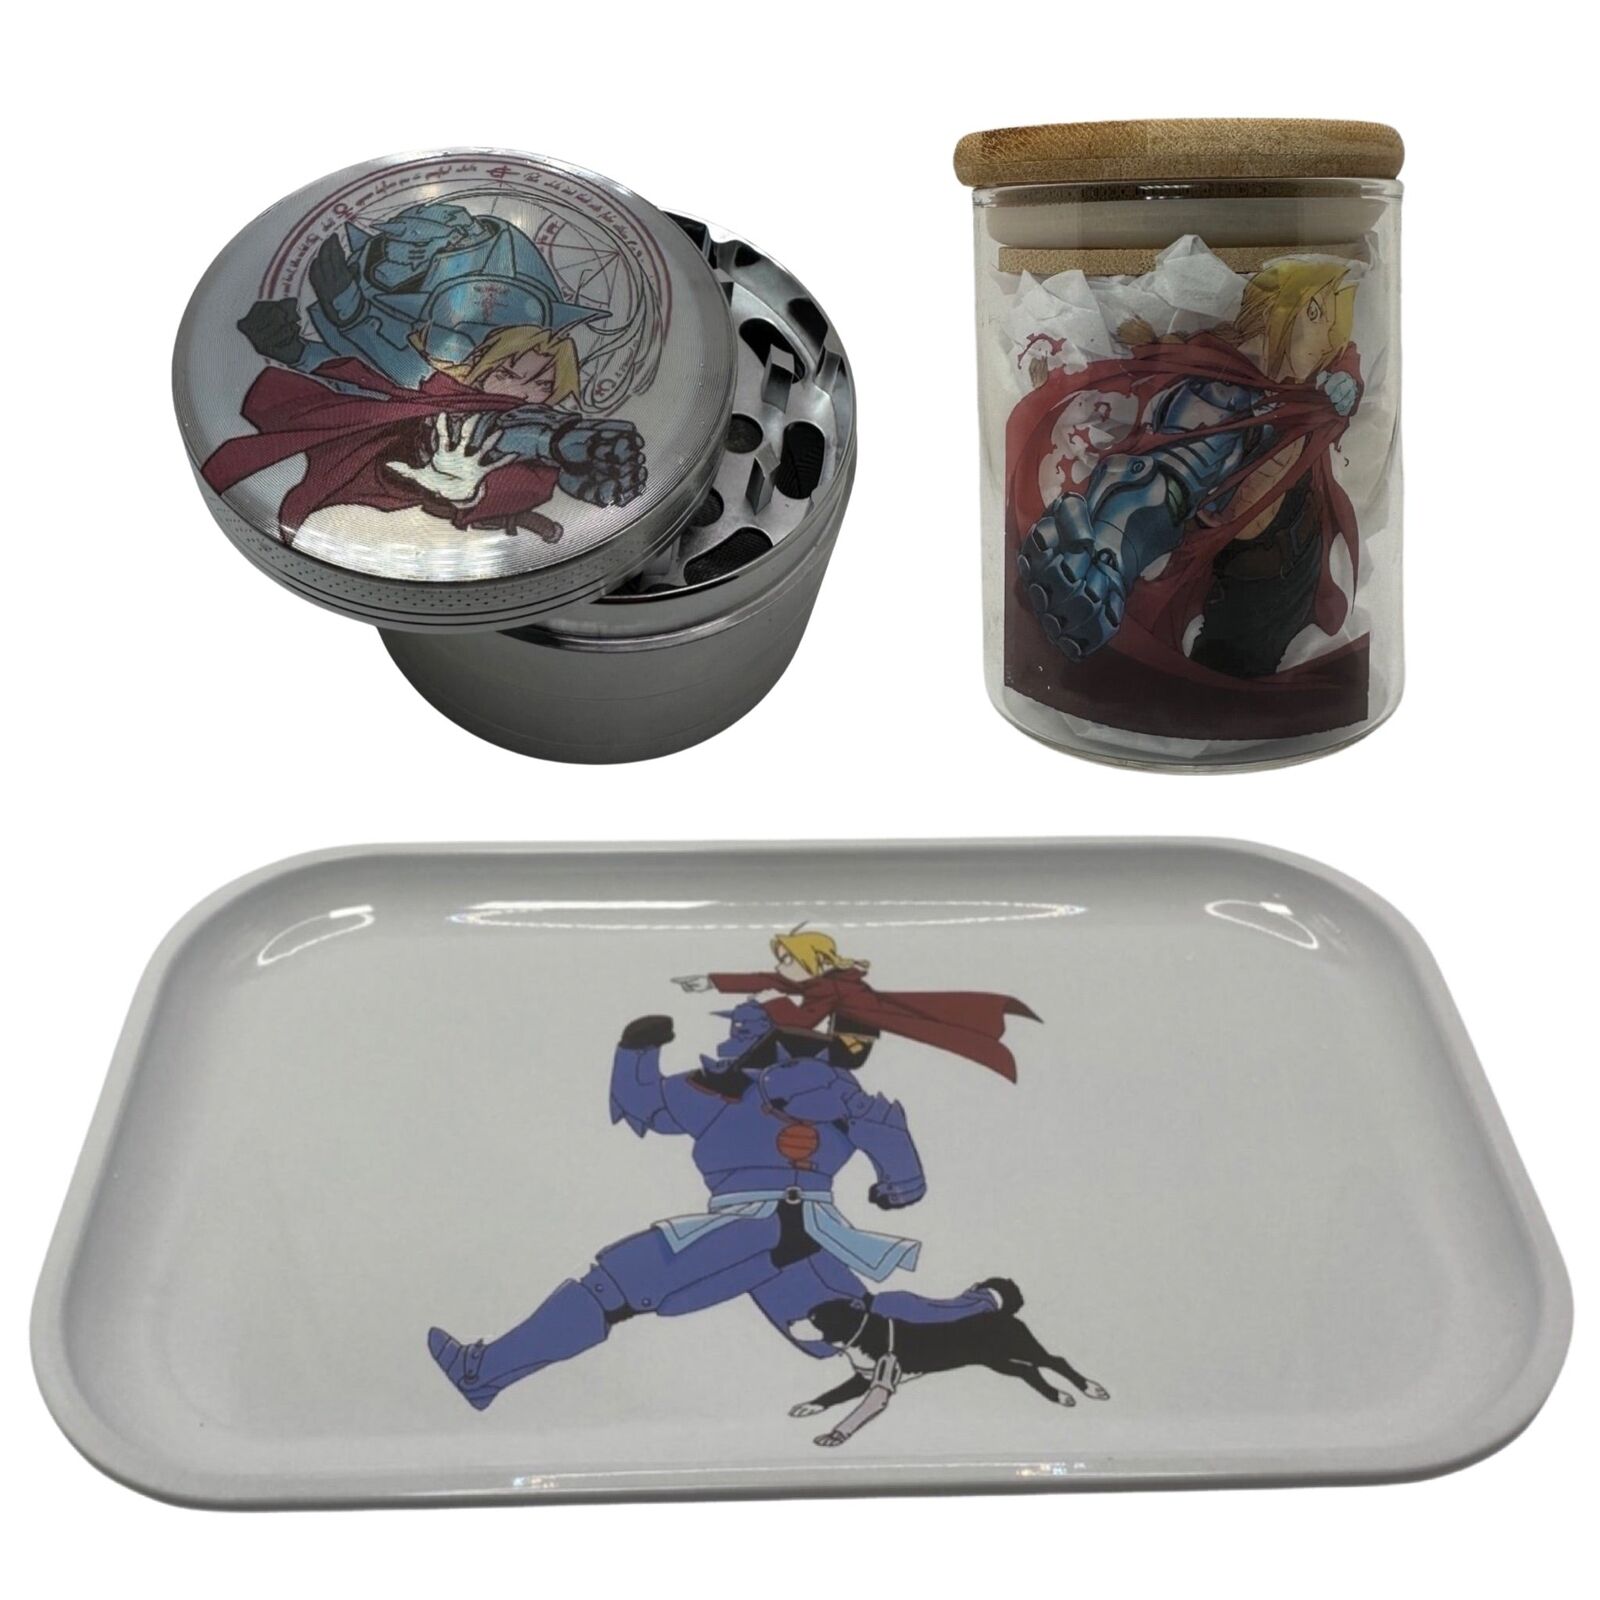 Alchemist Anime Herb Grinder, Stash Jar, Rolling Tray Set